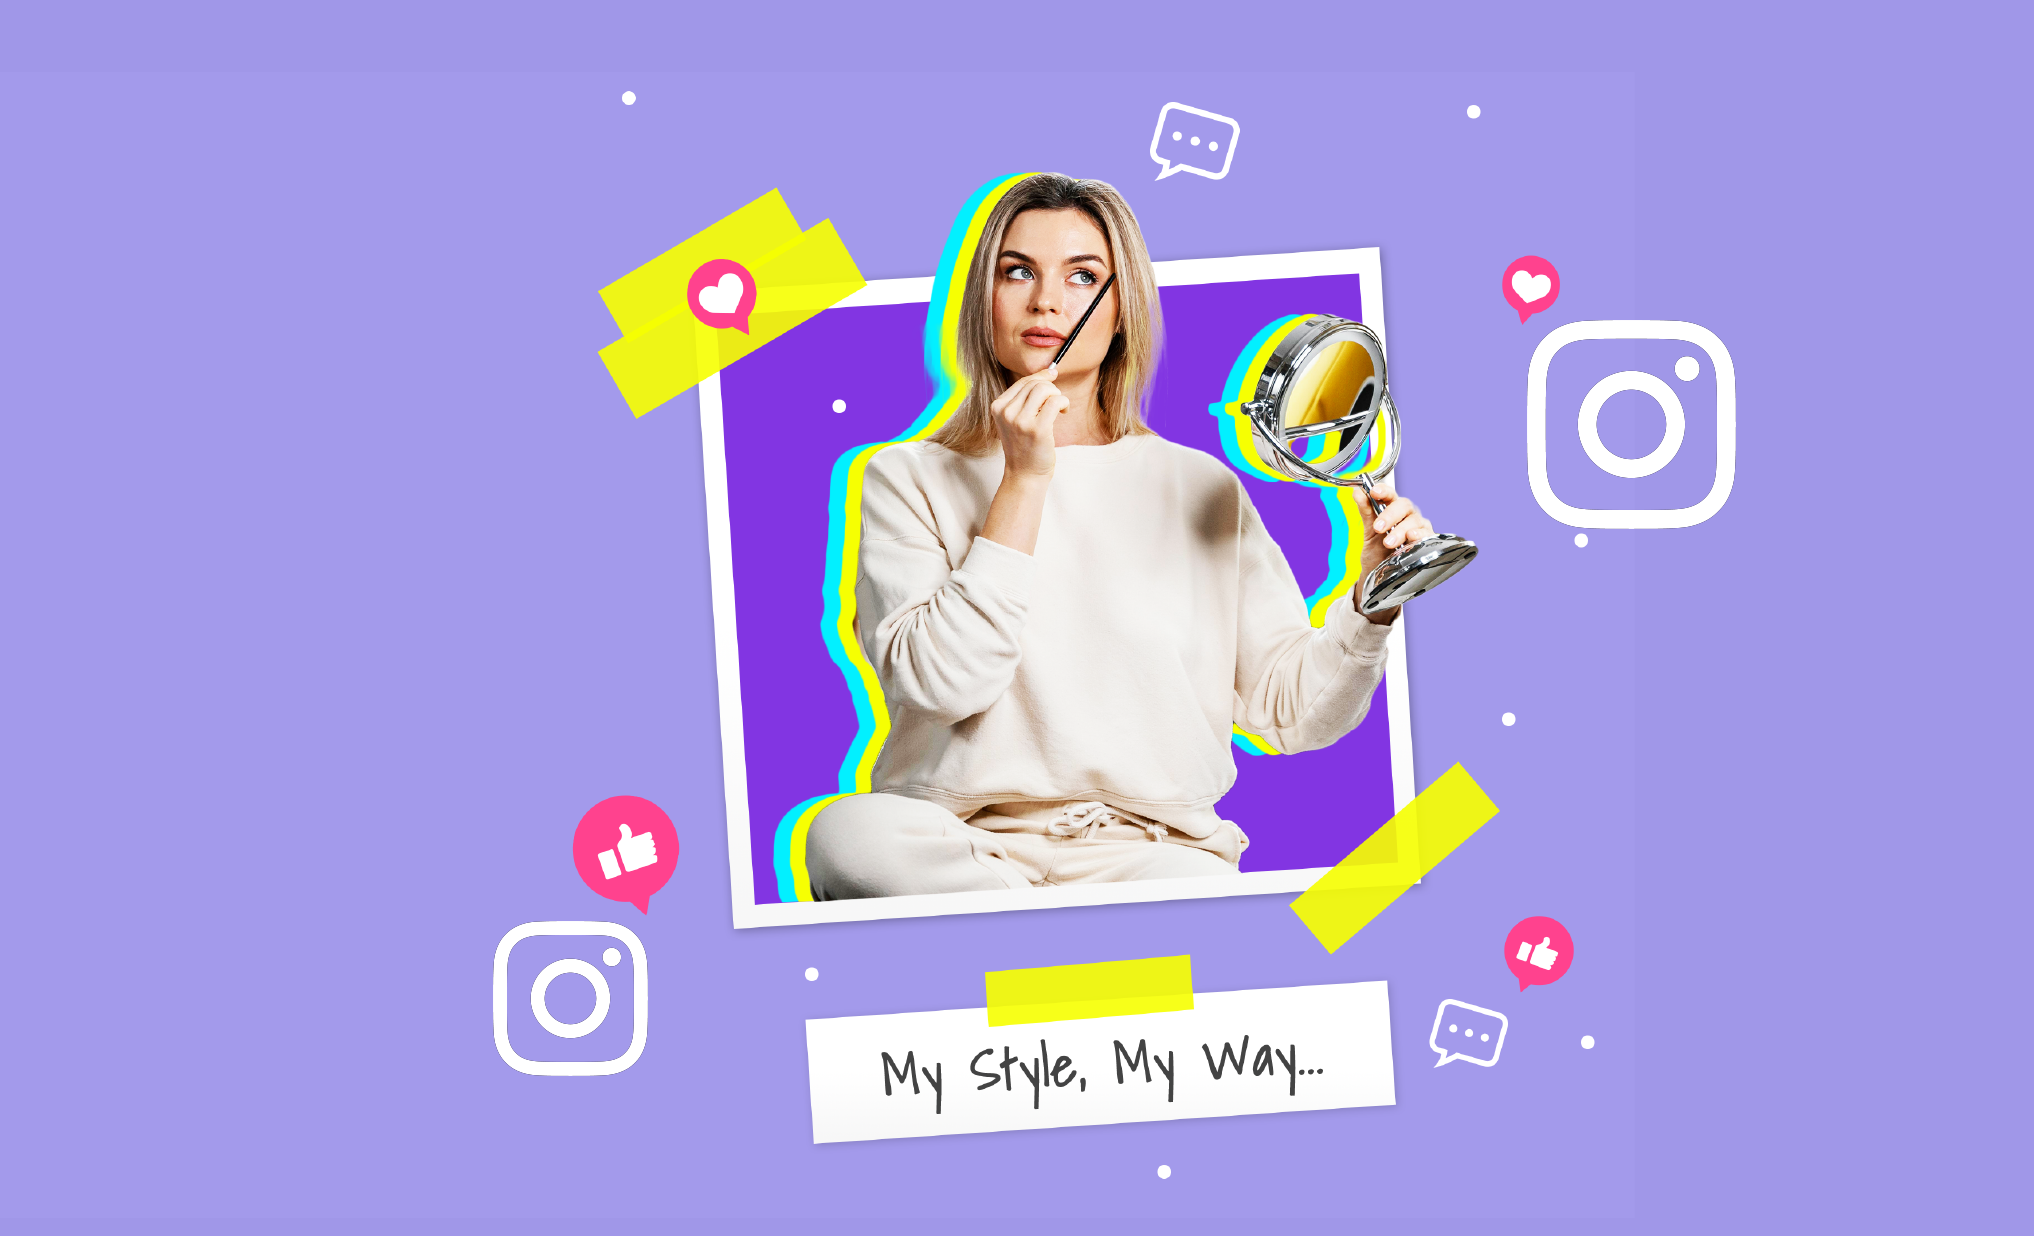 Creator Studio For Instagram: A Beginner's Guide